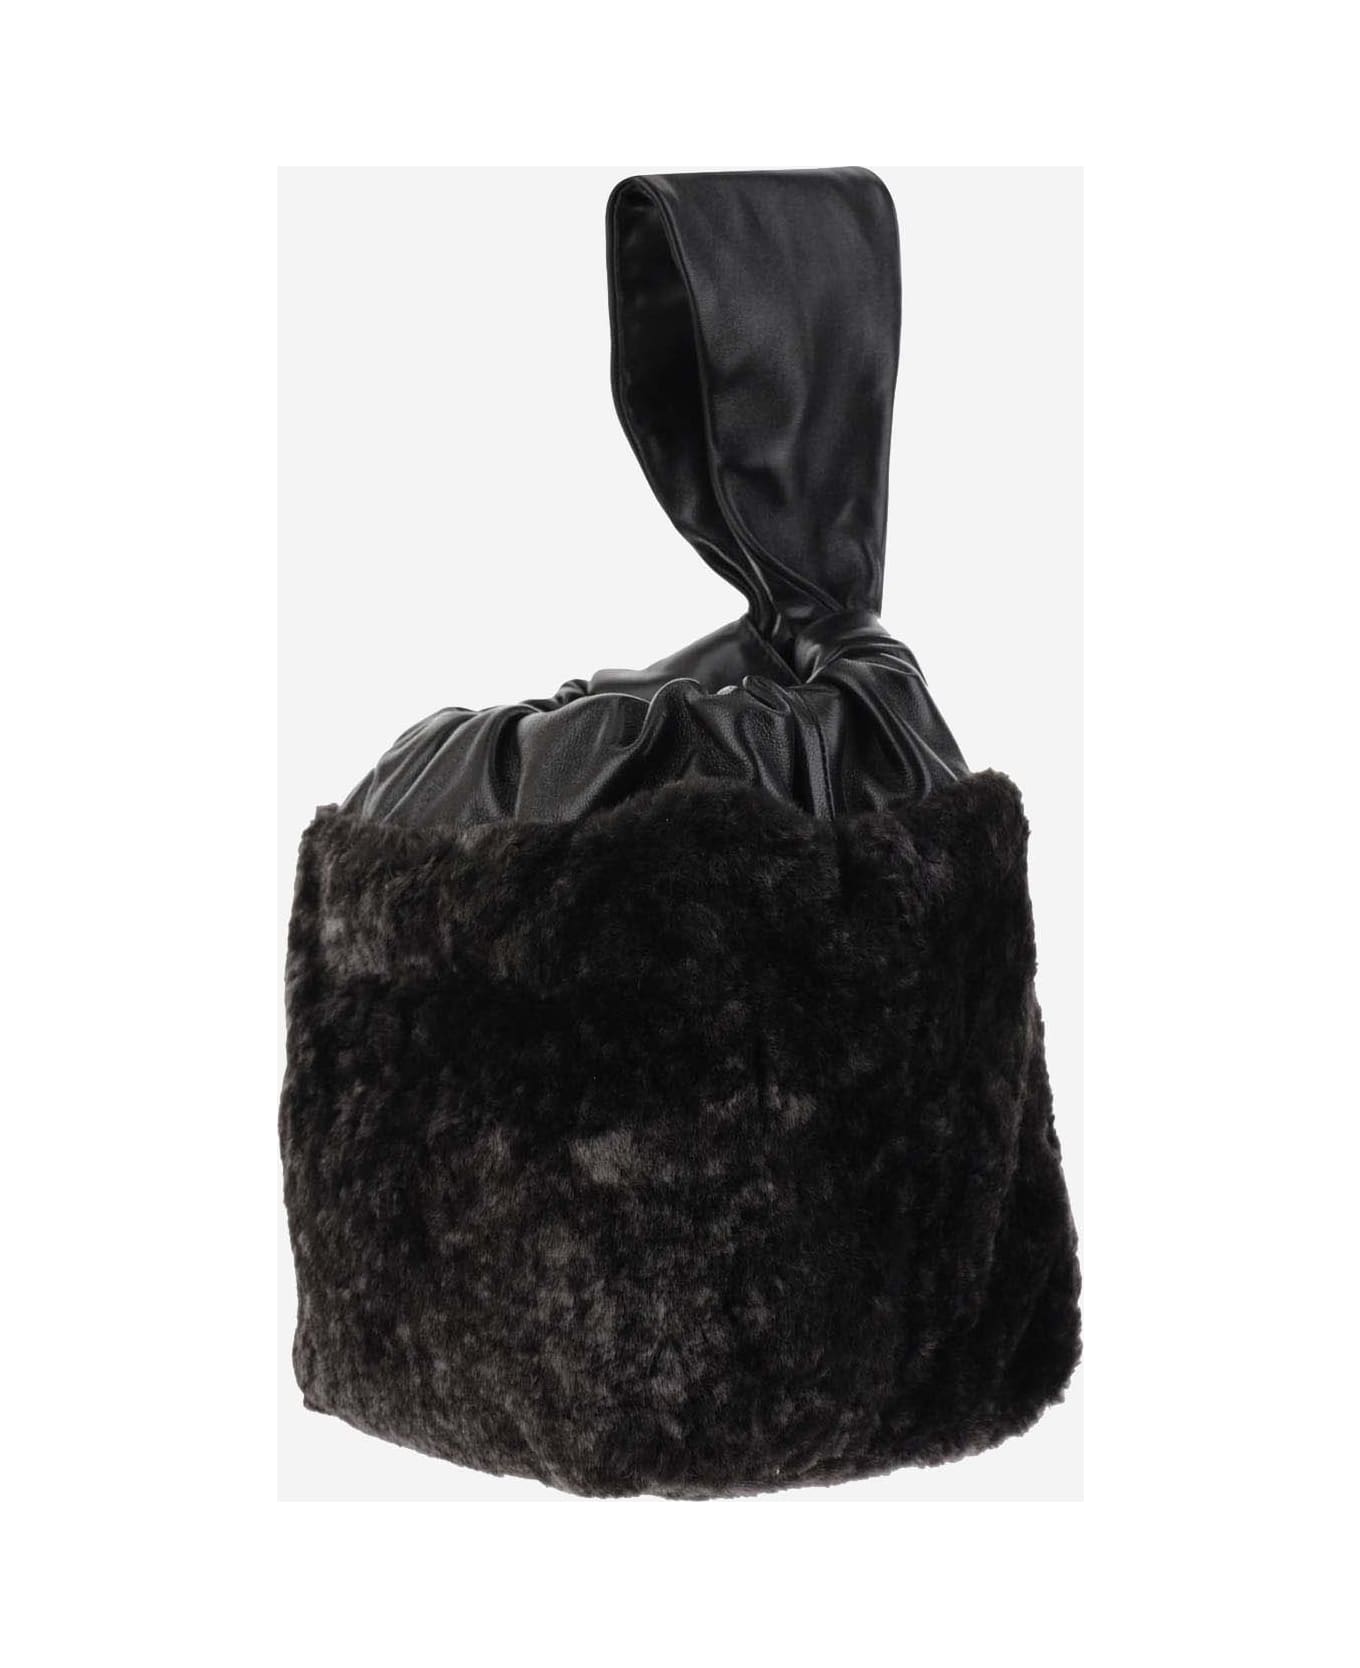 Jil Sander Leather And Shearling Bag - Black